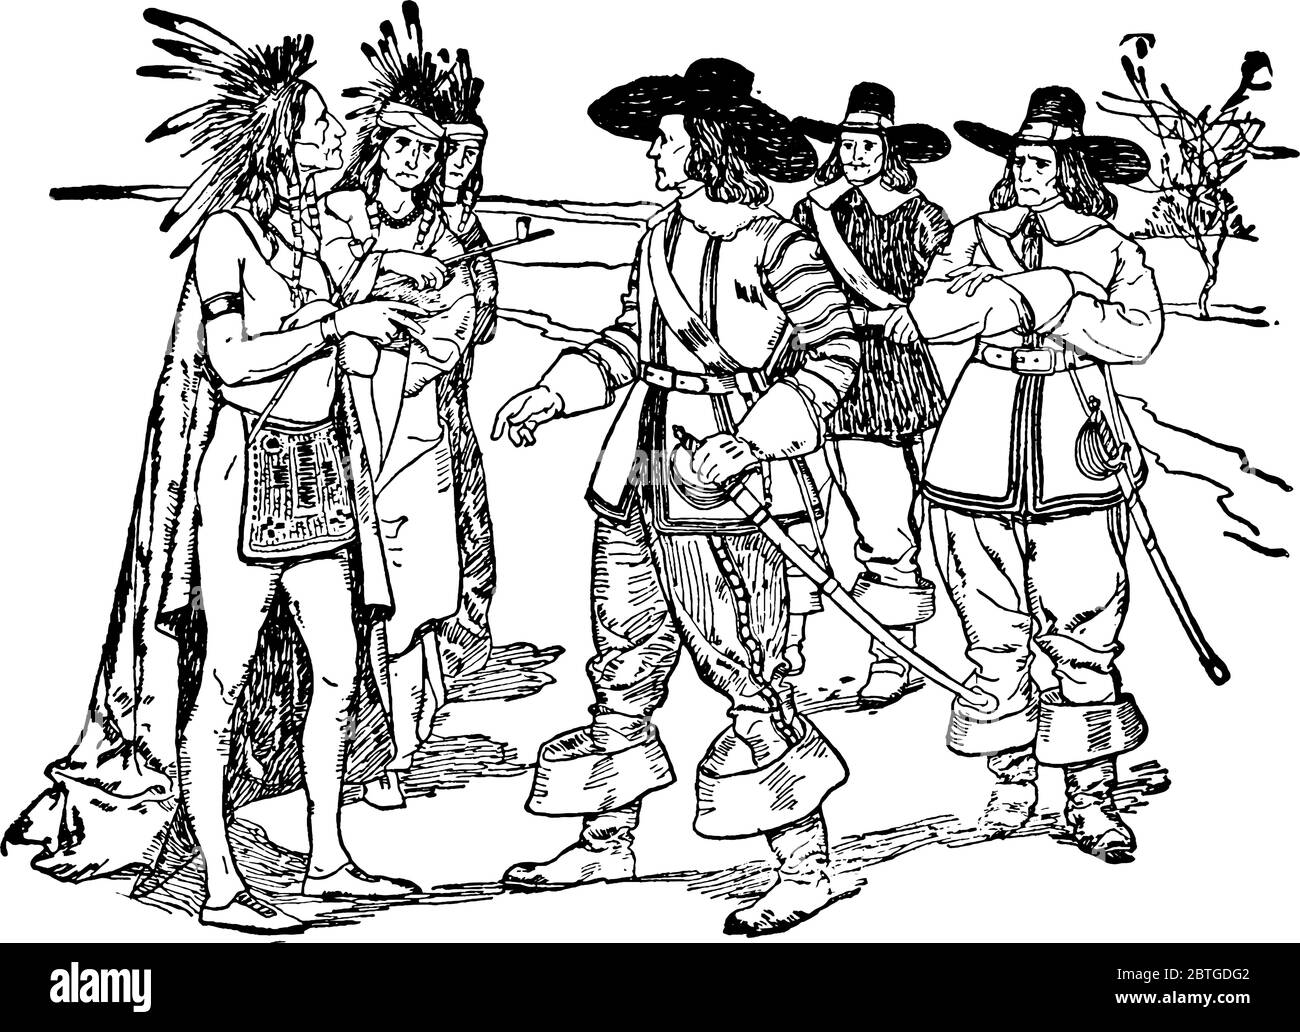 Esta figura representa a los indios vestidos con ropa local hablando con los colonos europeos, dibujo de líneas vintage o ilustración grabada. Ilustración del Vector